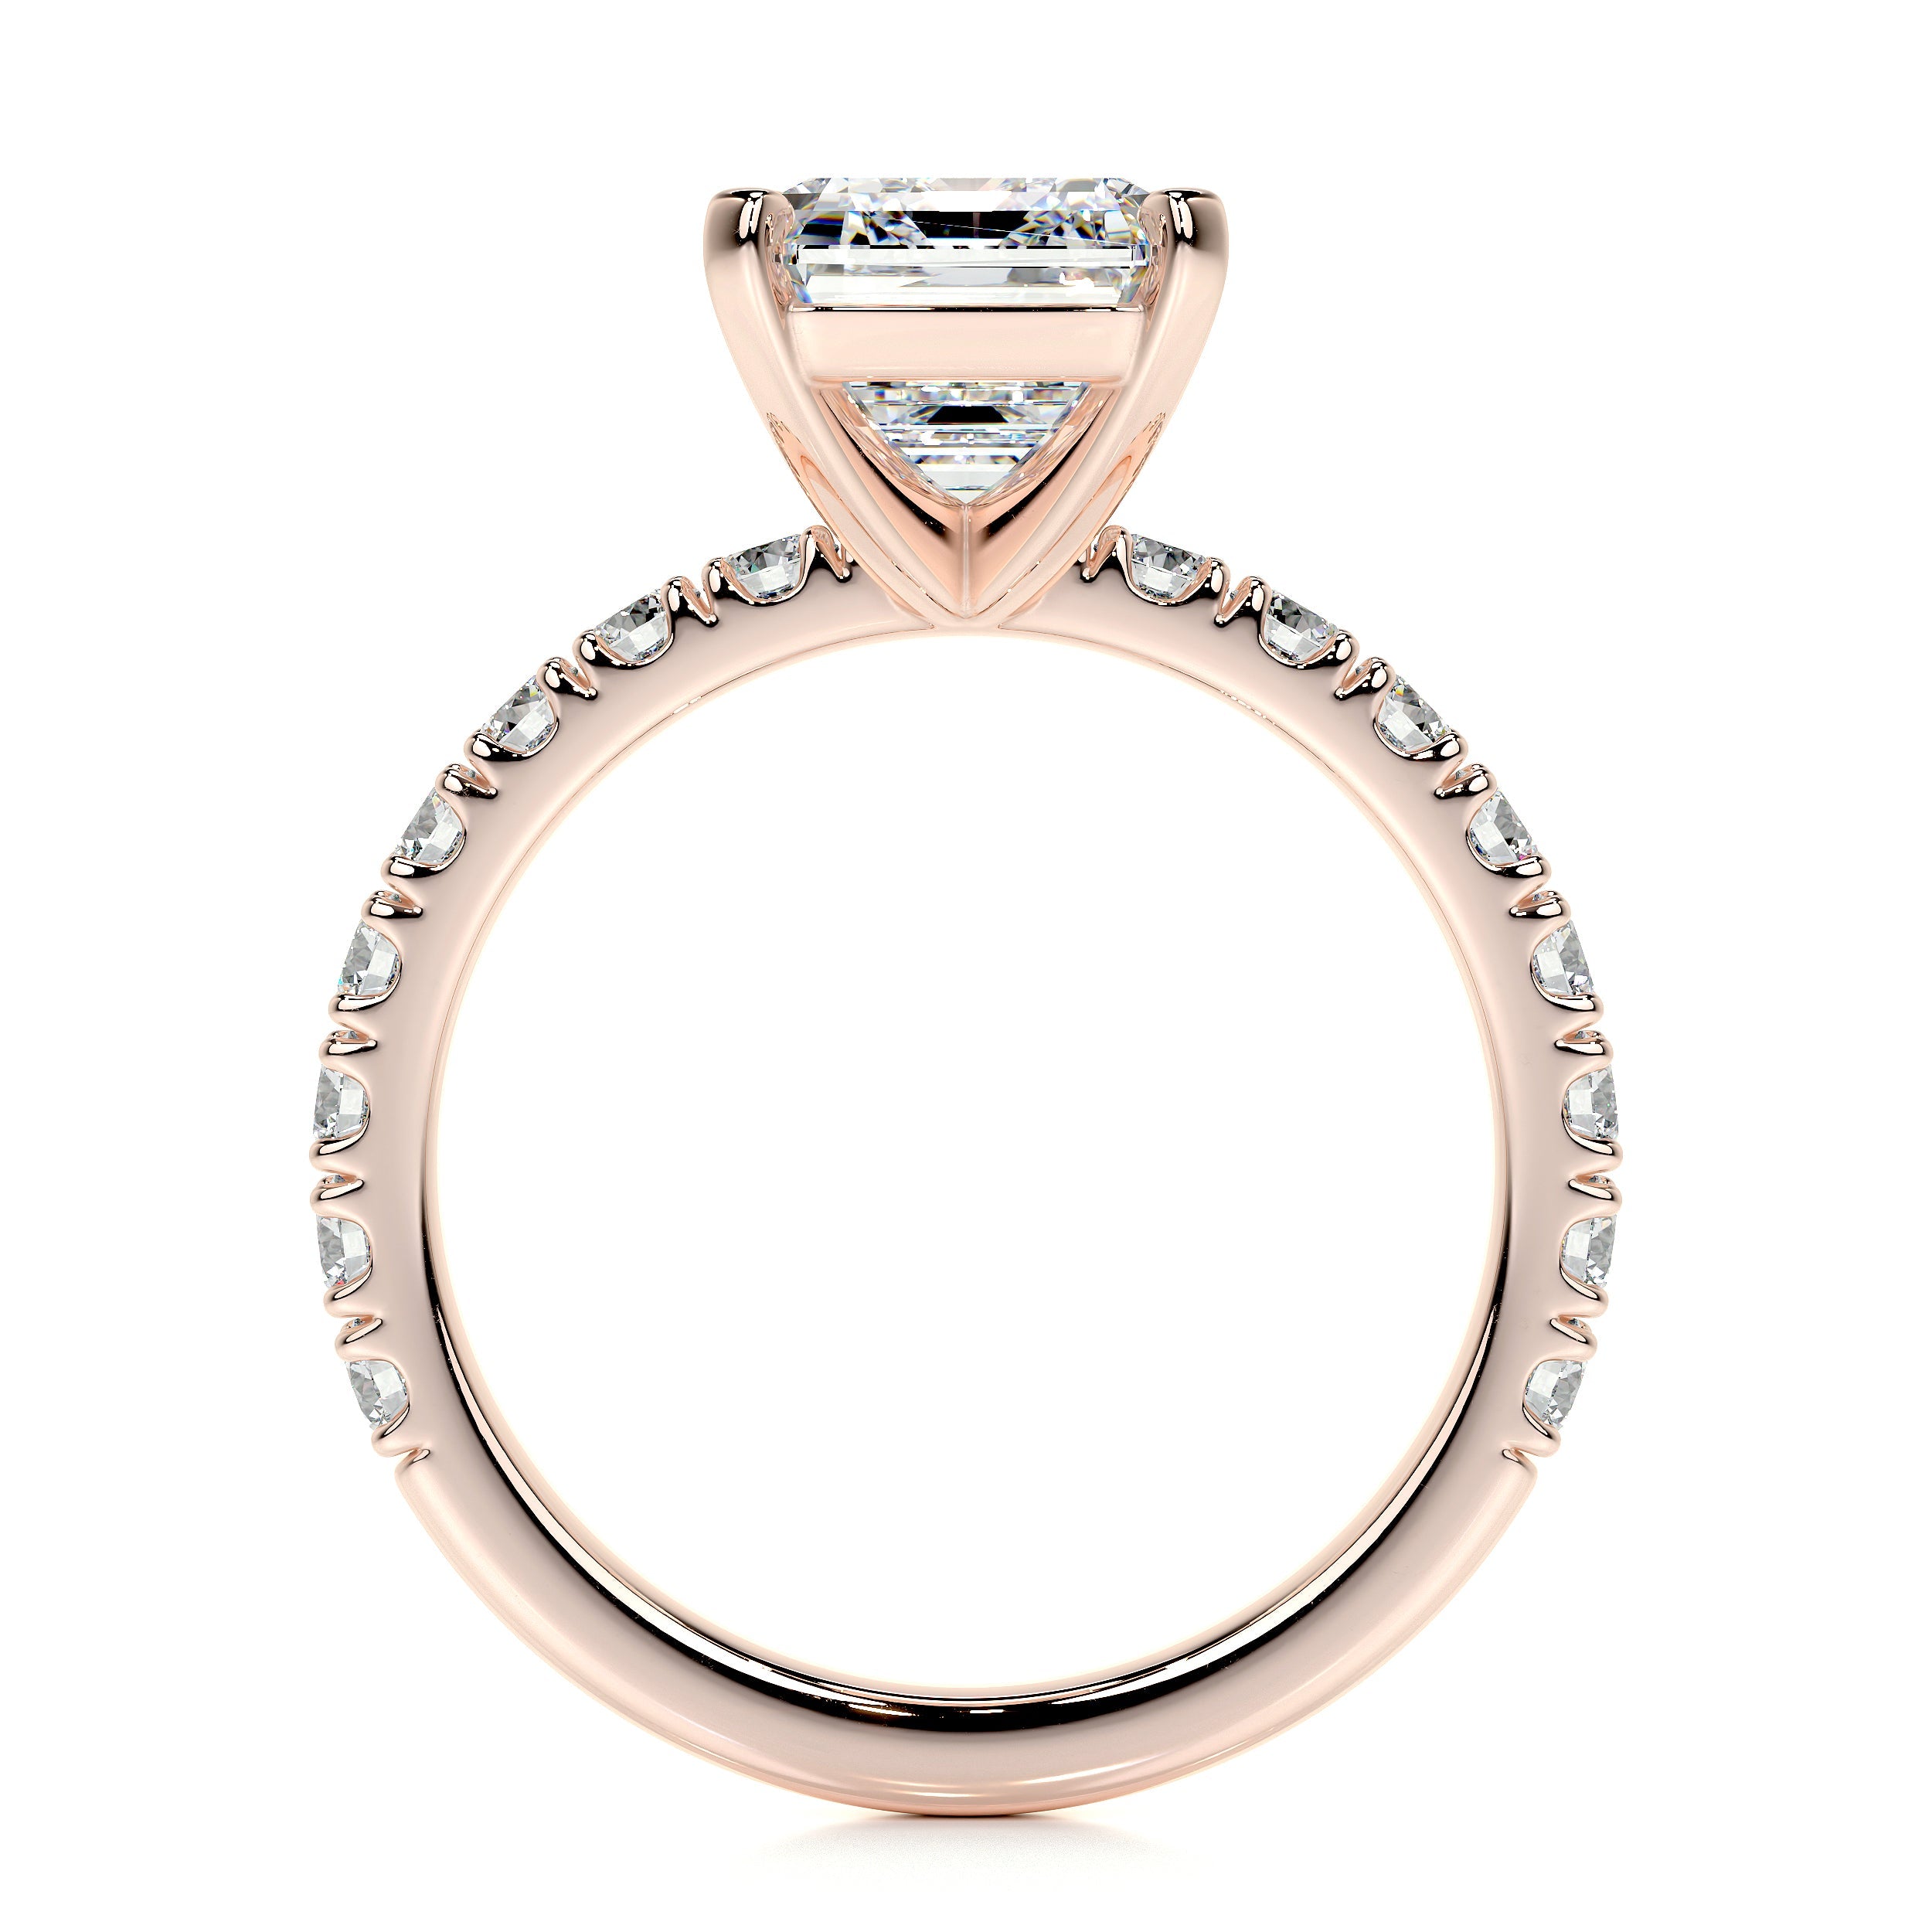 Royal Lab Grown Diamond Ring   (3.5 Carat) -14K Rose Gold